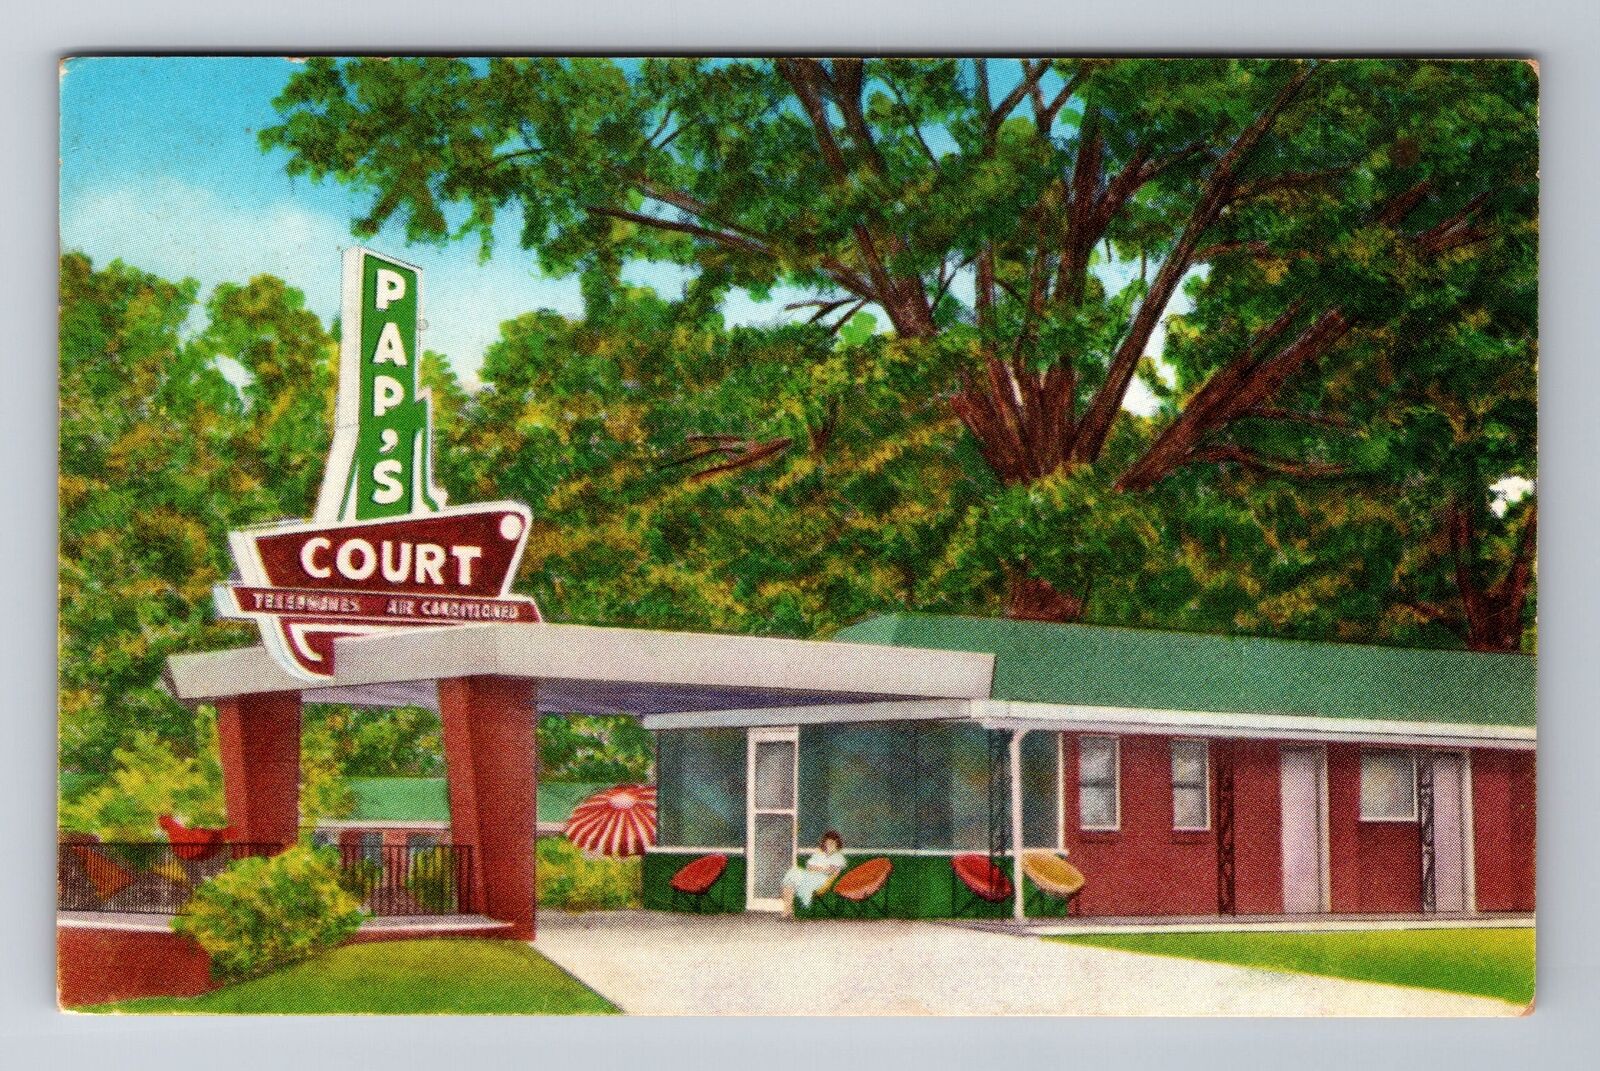 Opelousas LA-Louisiana, Pap's Court, Advertising, Vintage Souvenir Postcard